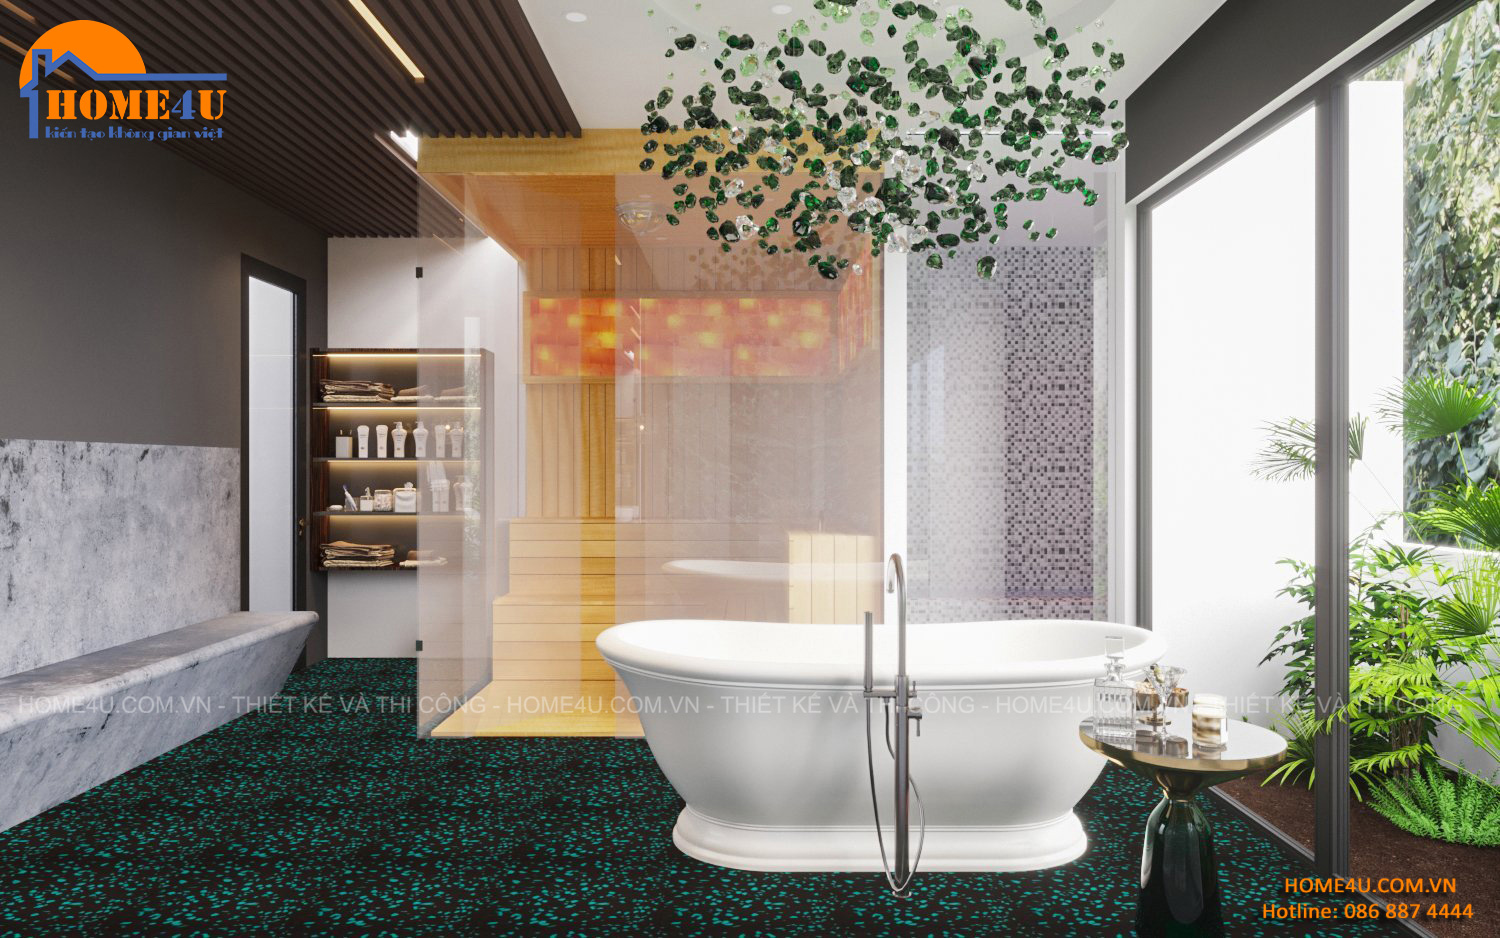 Thiết kế nội thất nhà phố 7 tầng hiện đại anh Tuấn - NTNP2013 13